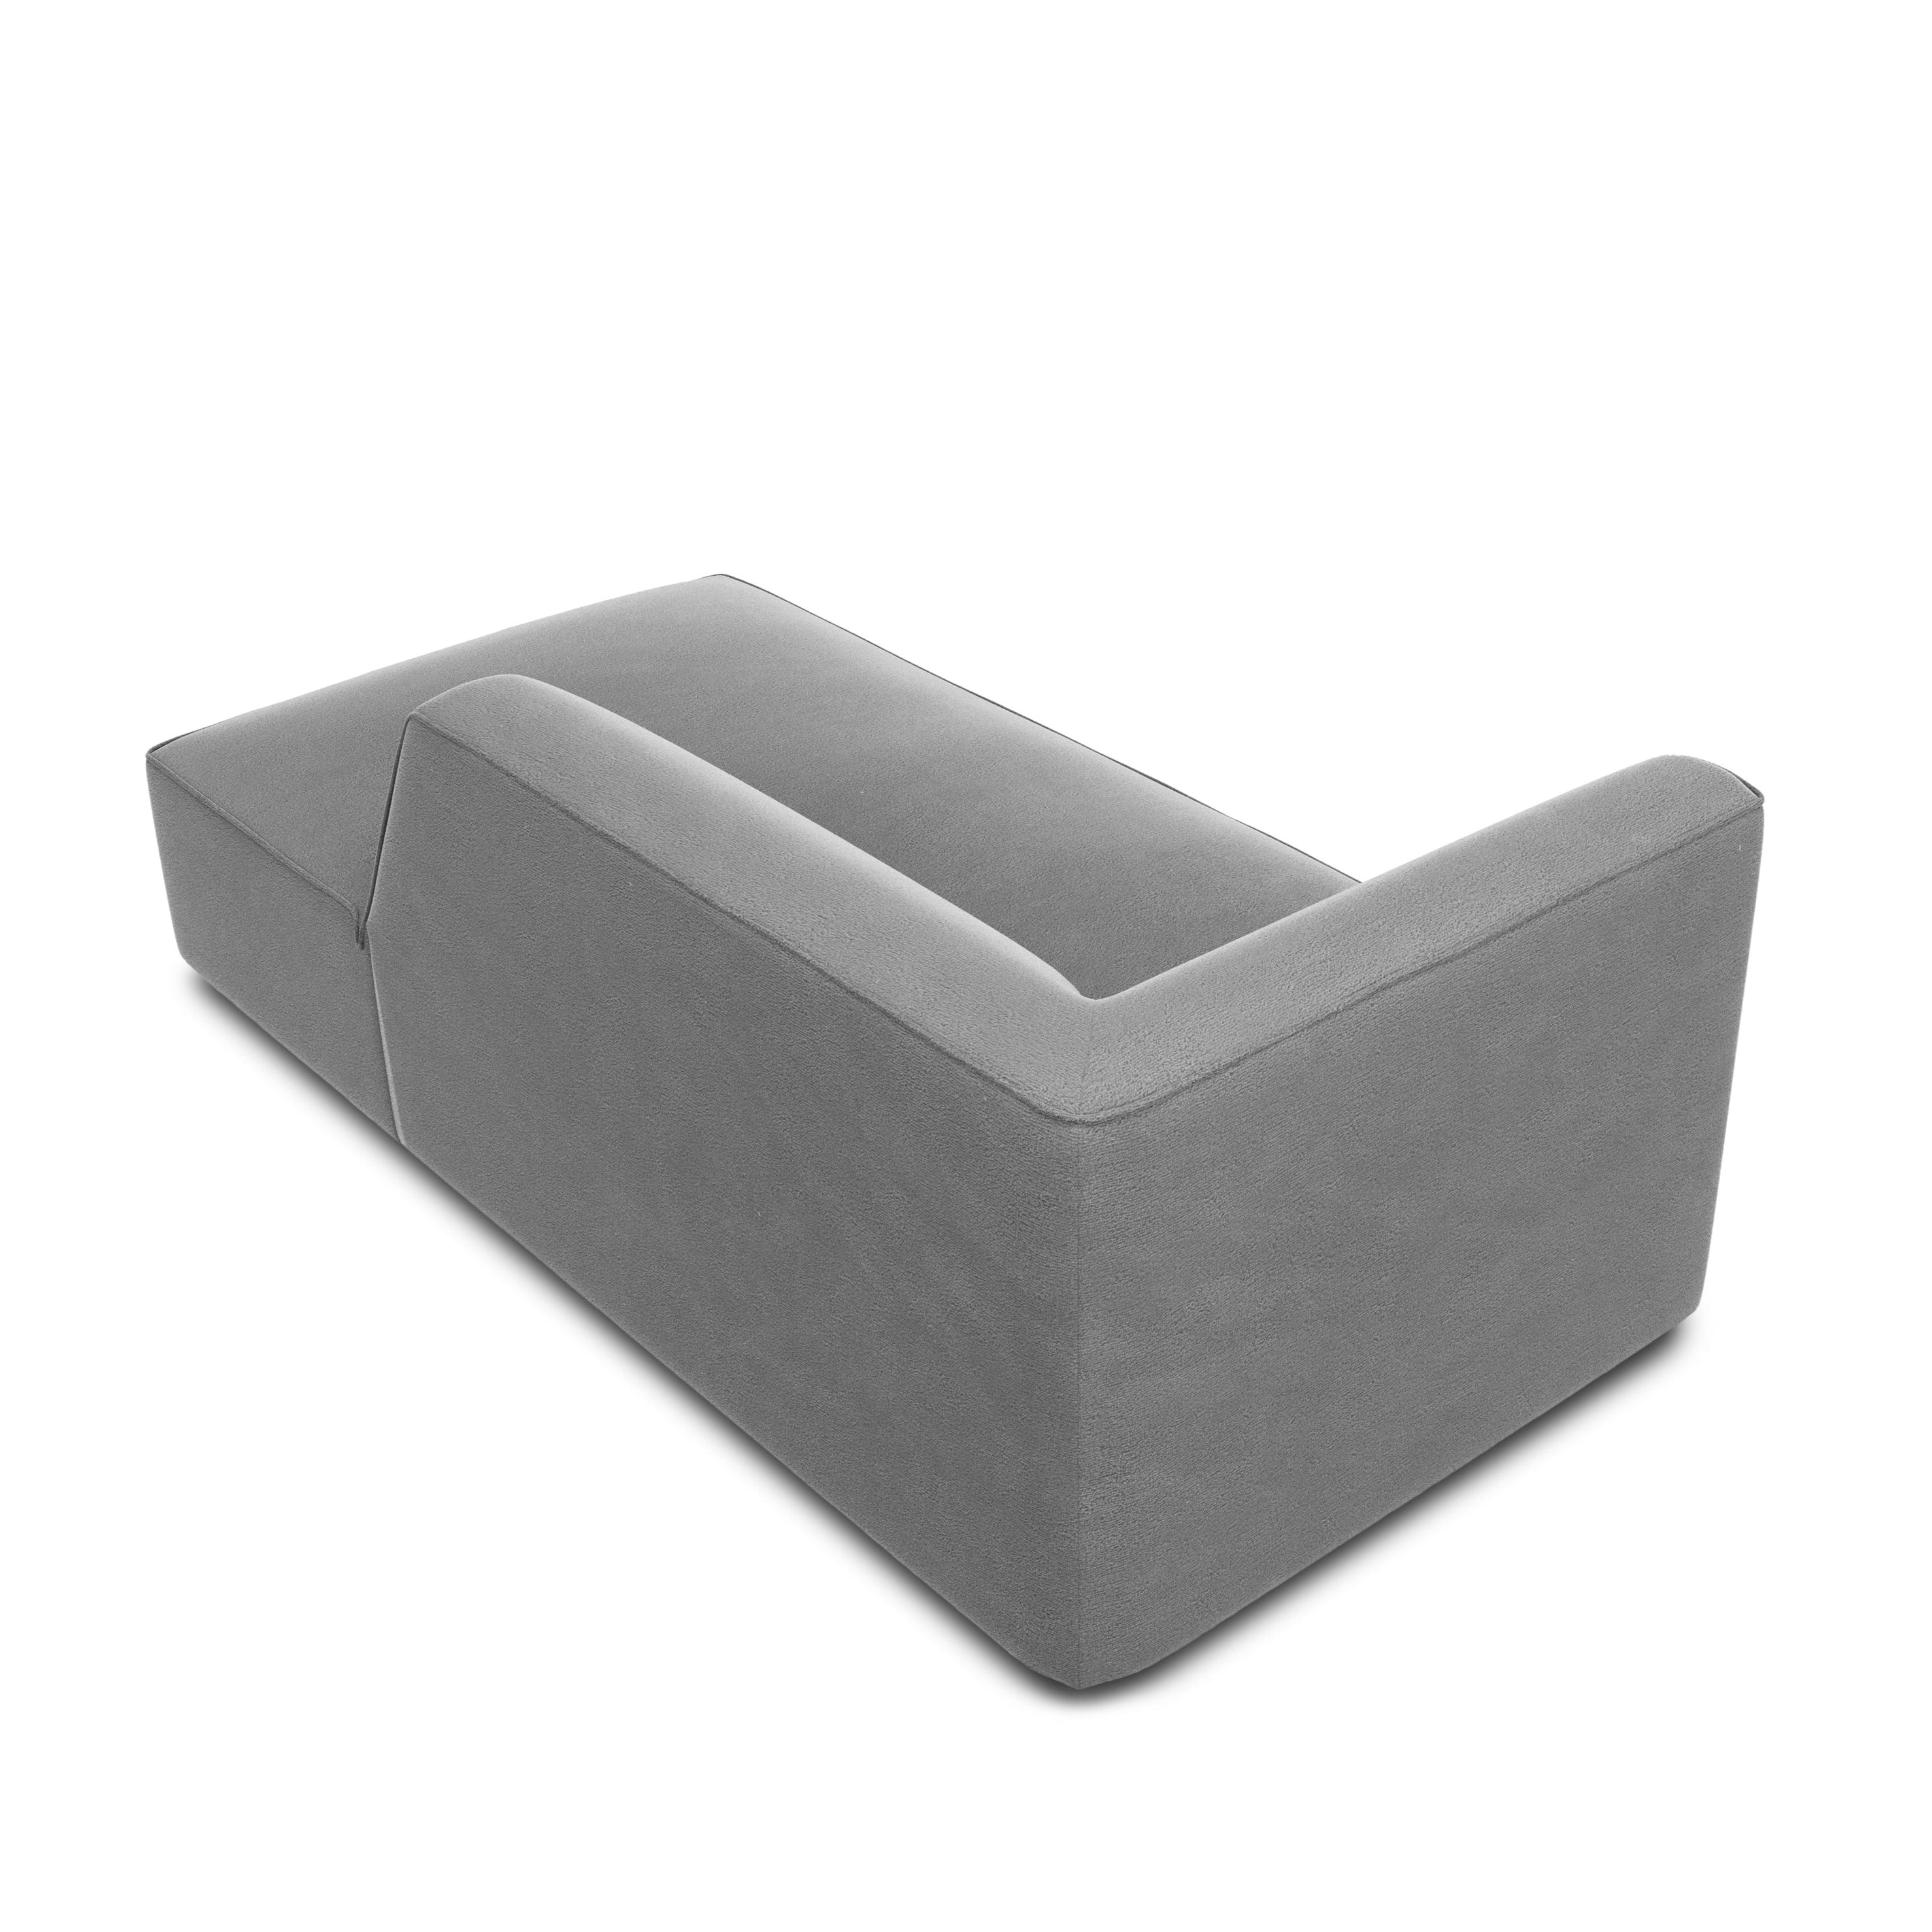 Velvet gray chaisebelong with backrest